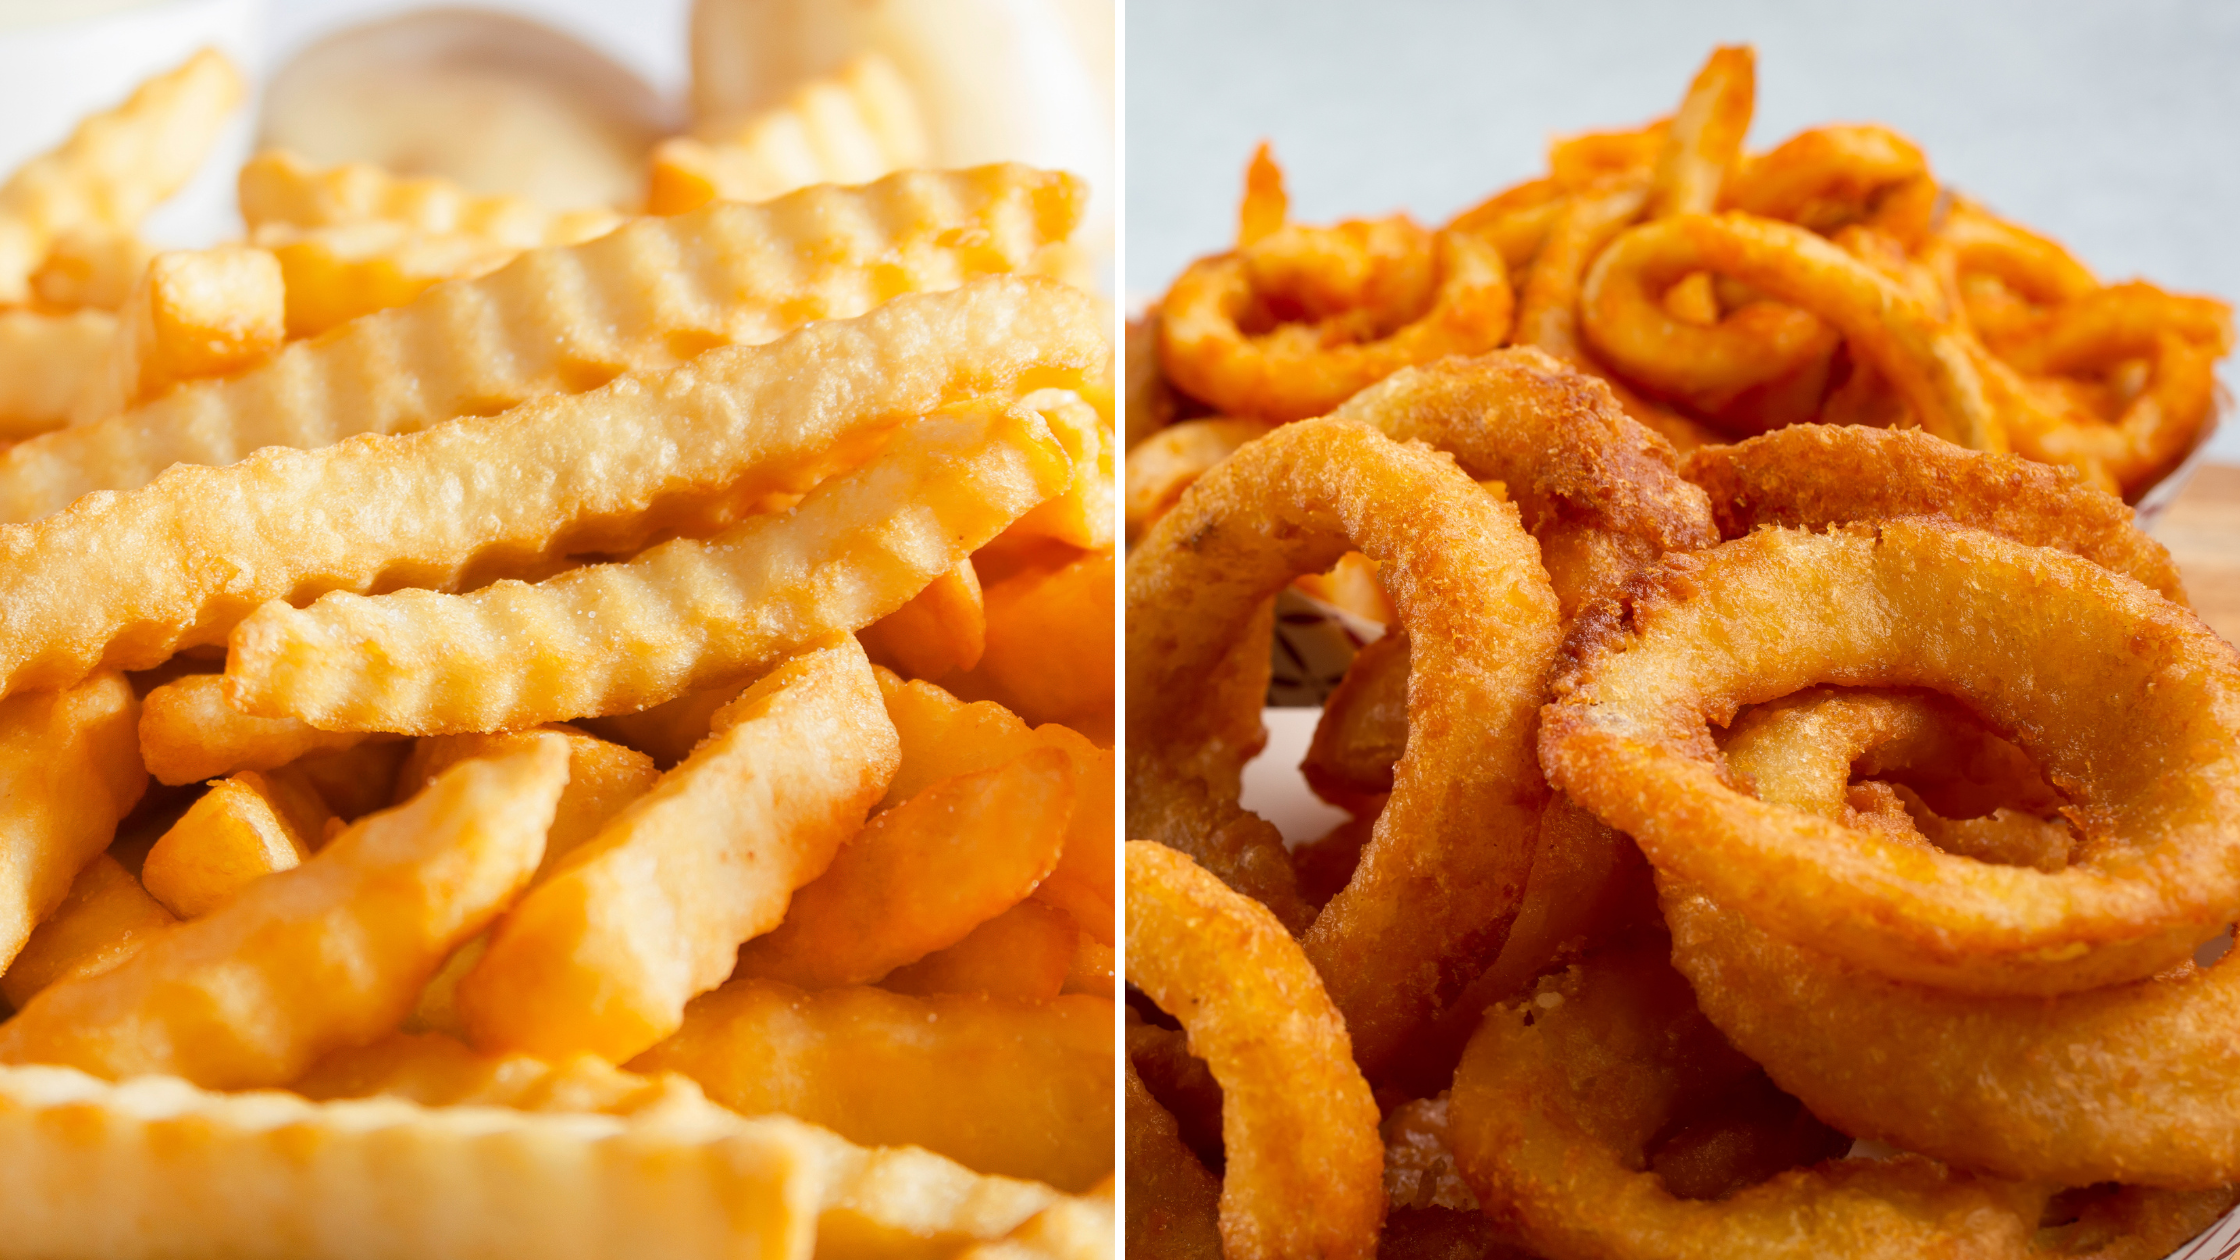 The Great Debate: Fries vs Onion Rings